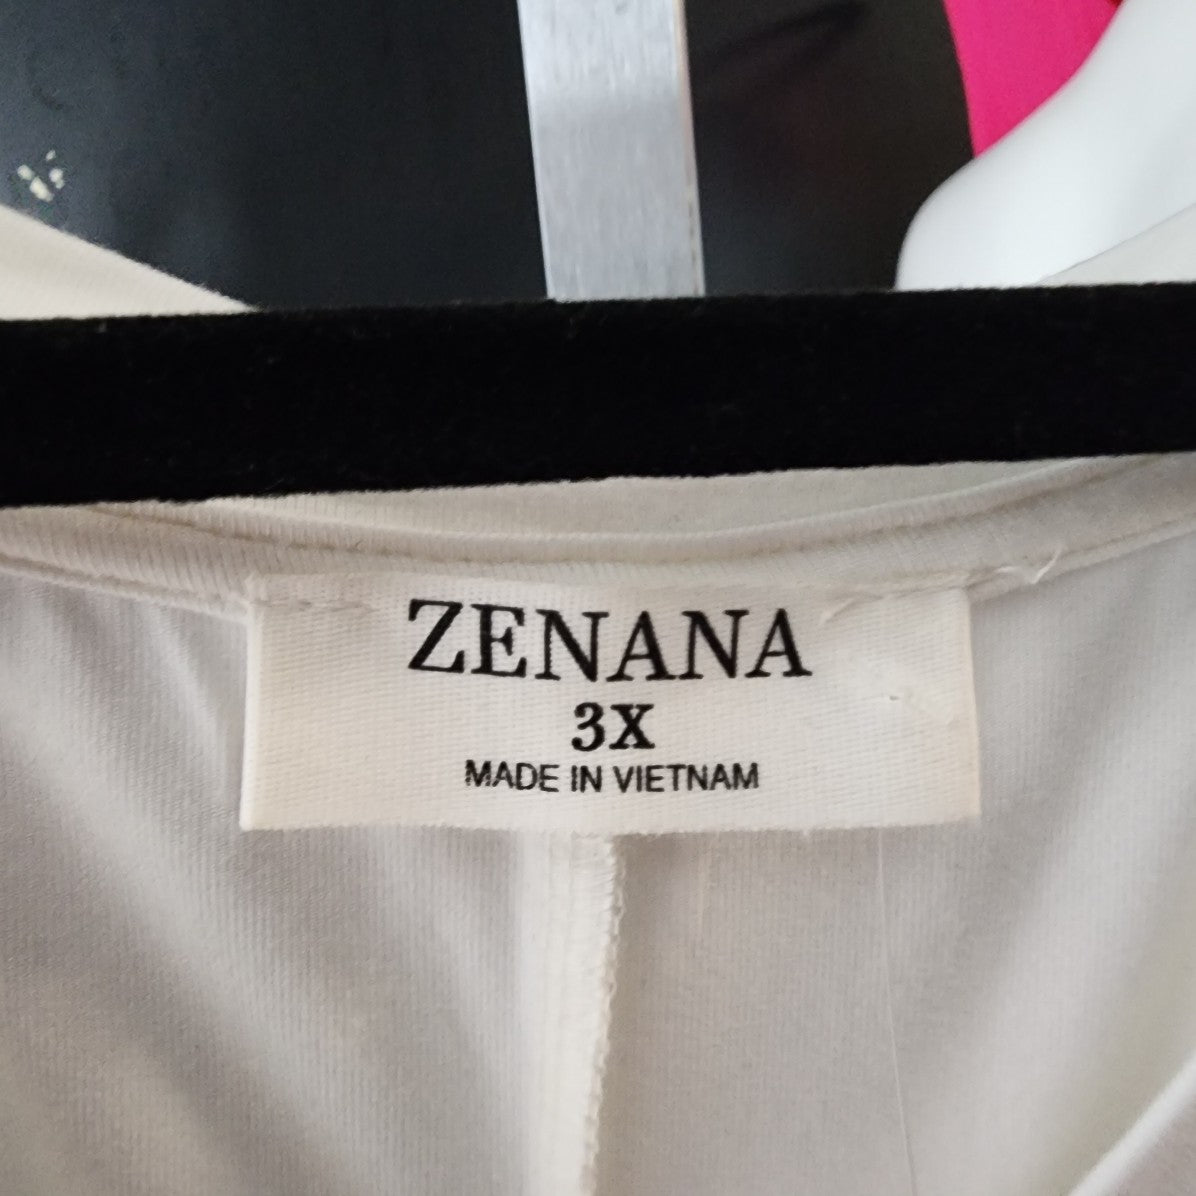 Zenana White Jersey Sleeveless Top Size 3X